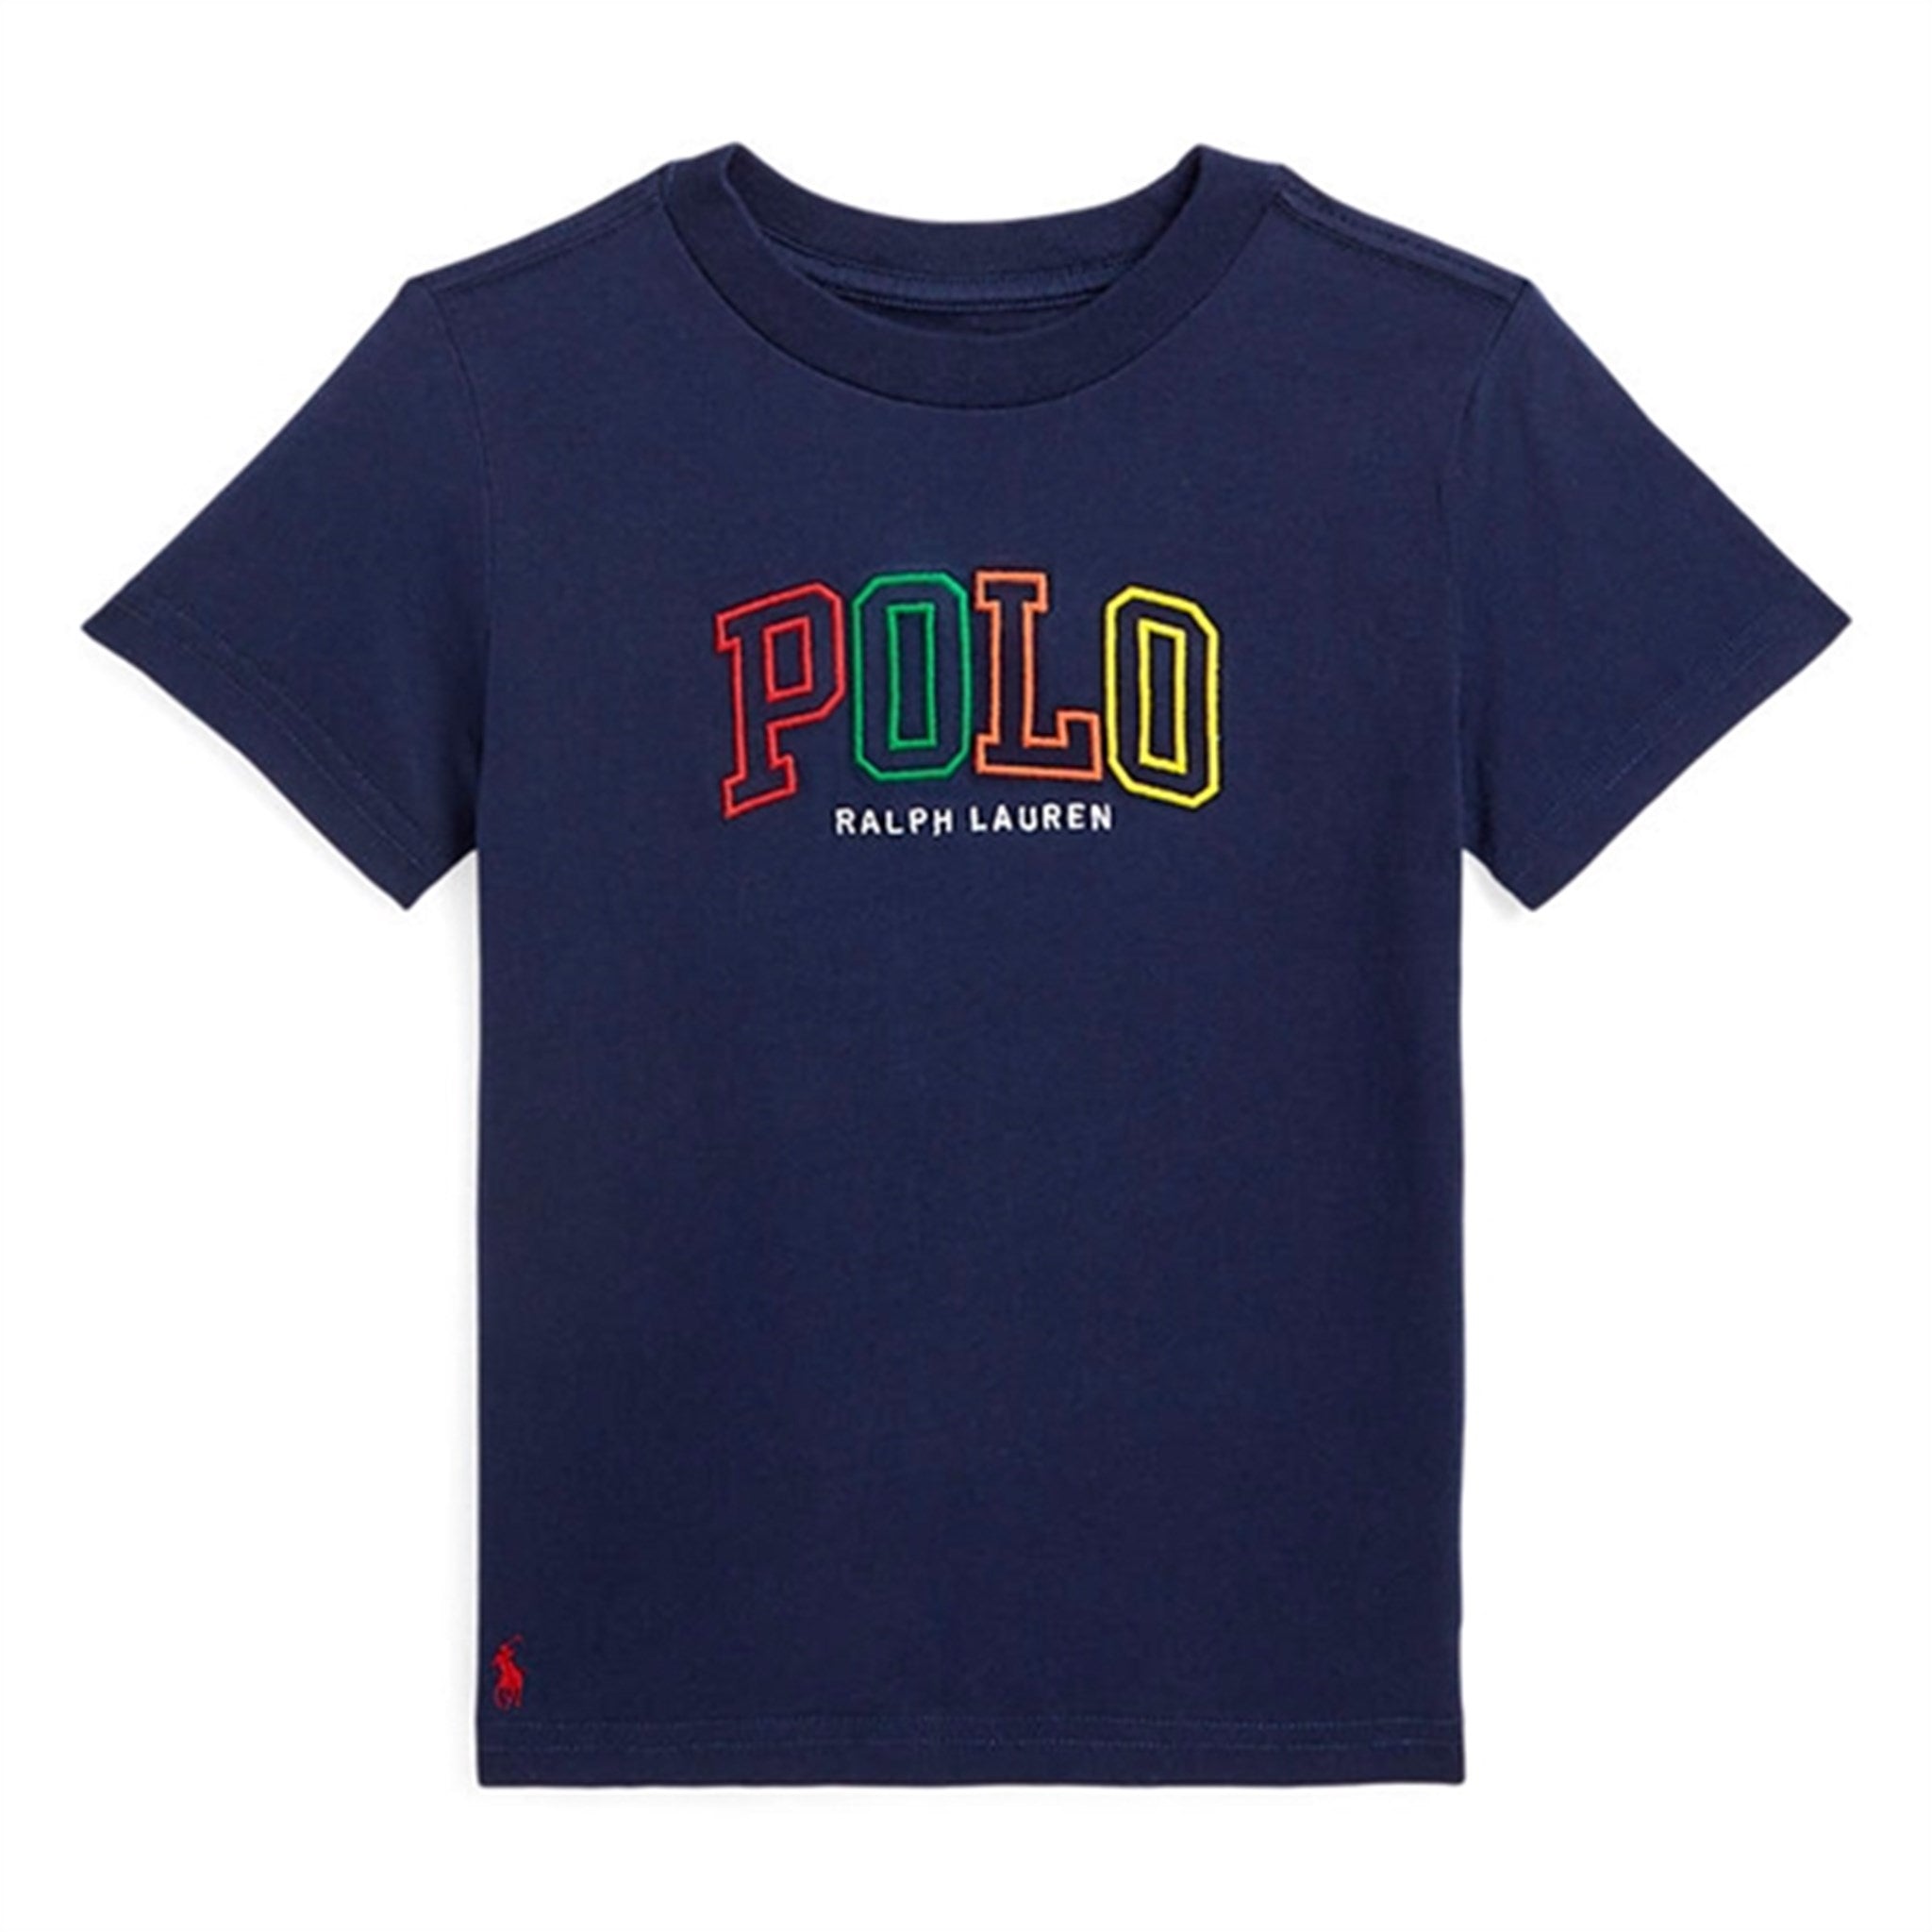 Polo Ralph Lauren T-Shirt Navy